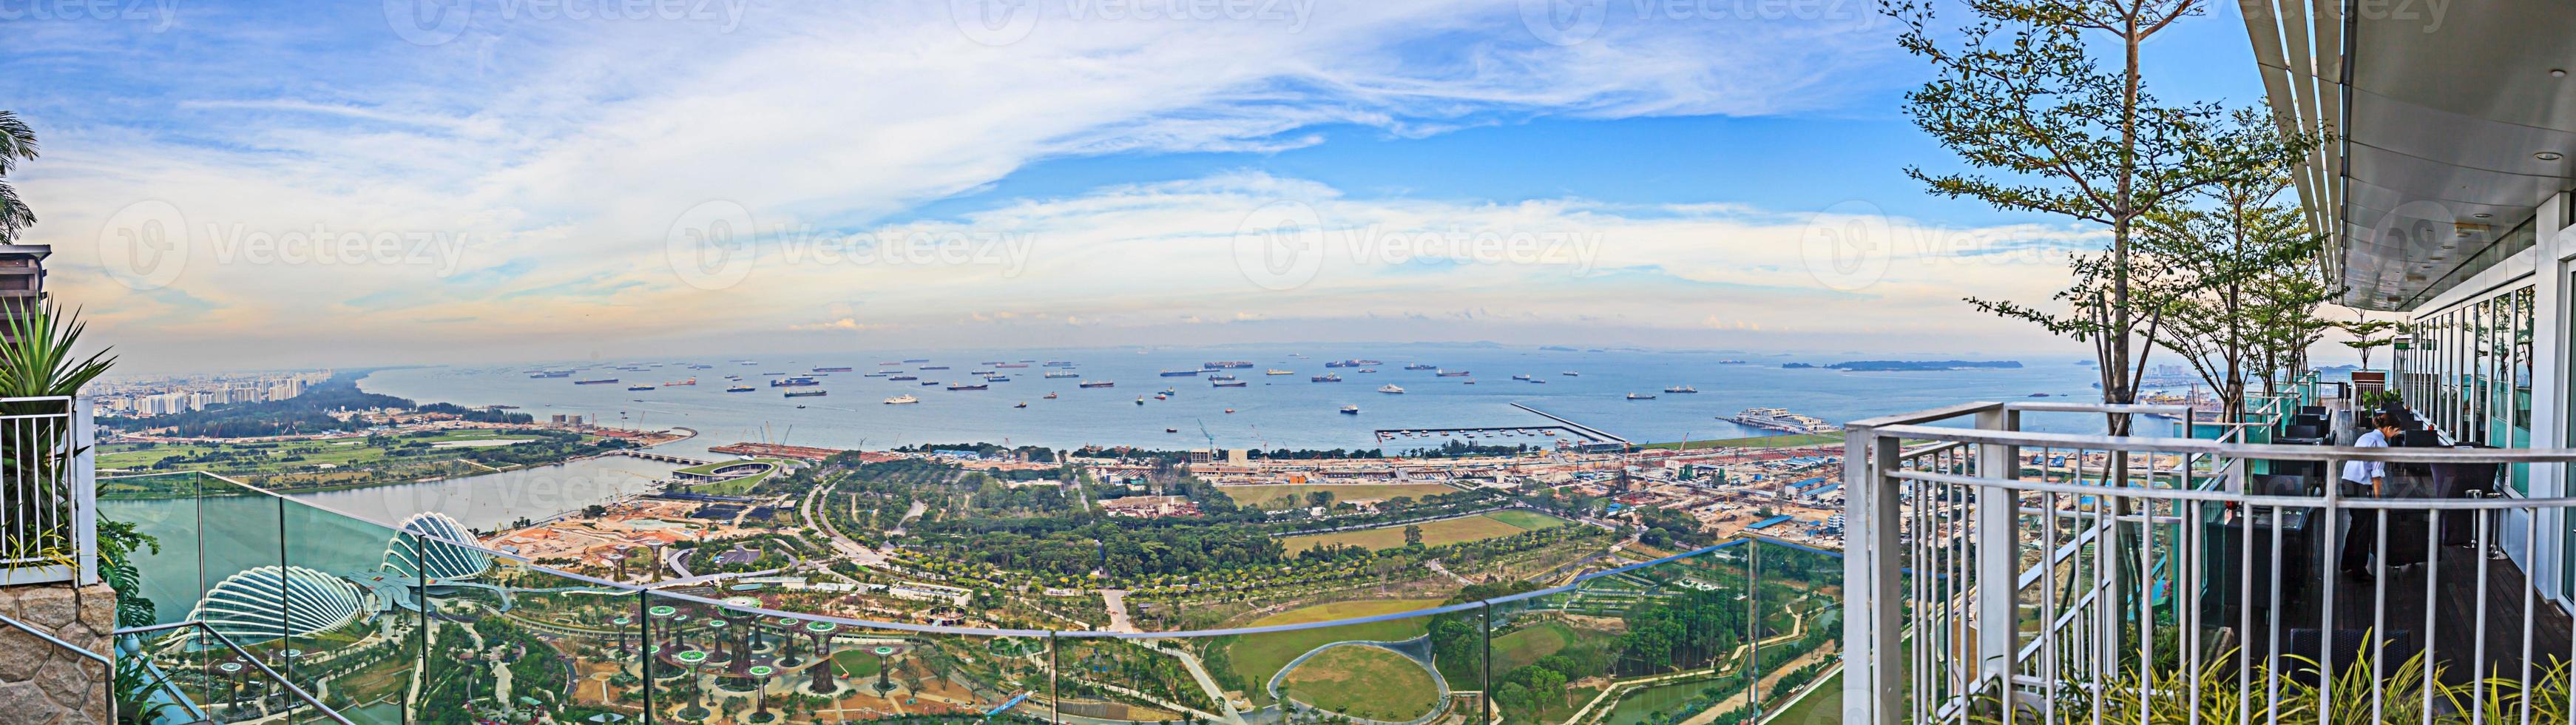 aereo panoramico immagine di il giardini di il baia nel Singapore durante giorno foto